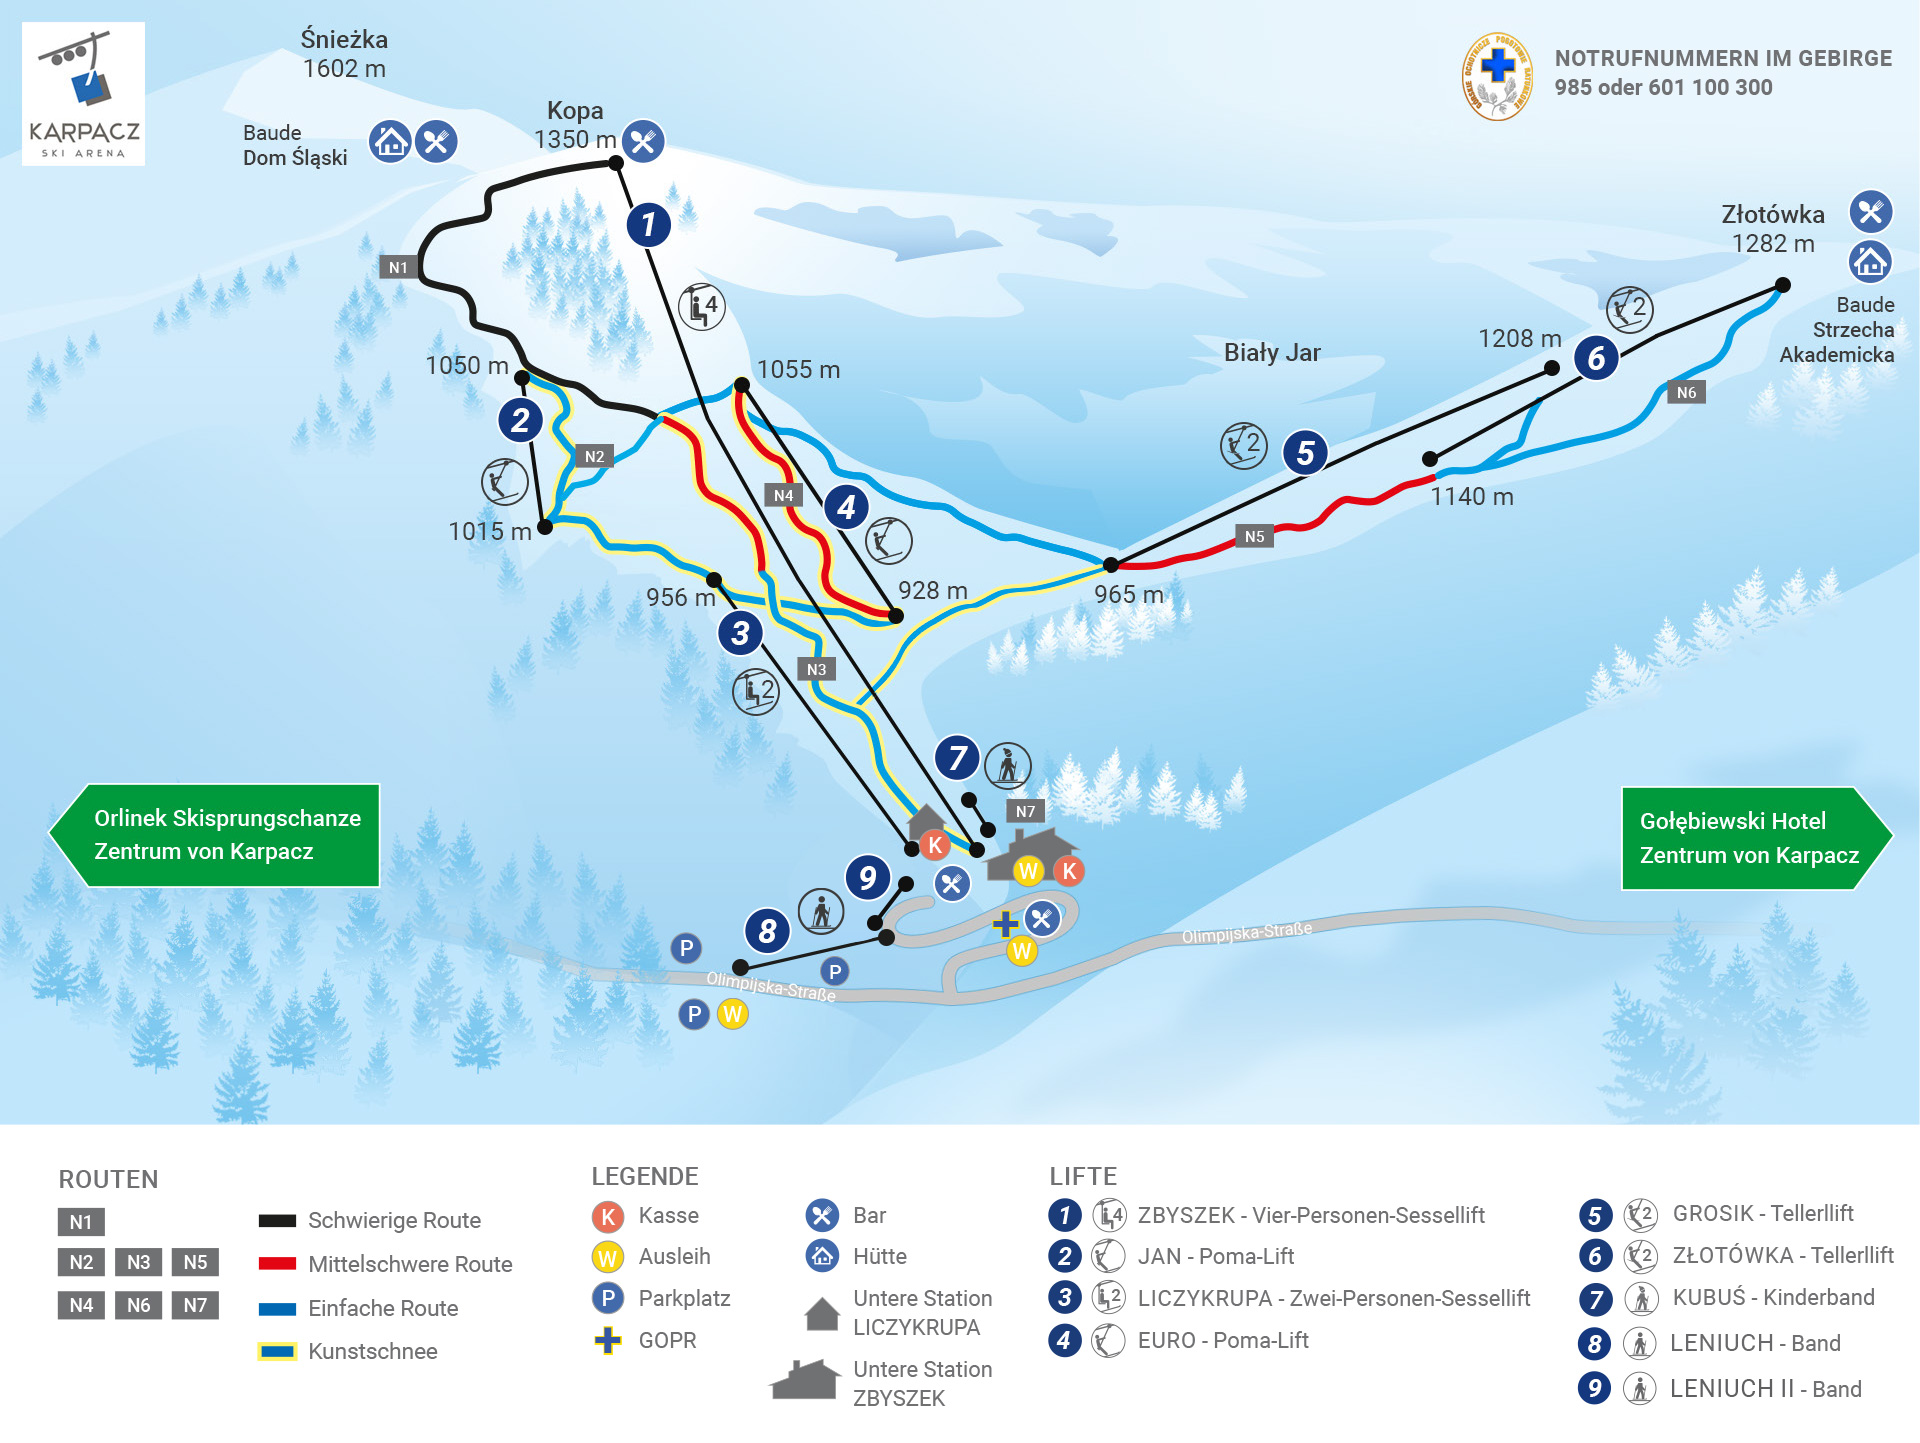 Karpacz Ski Arena_Karte der Routen und Lifte